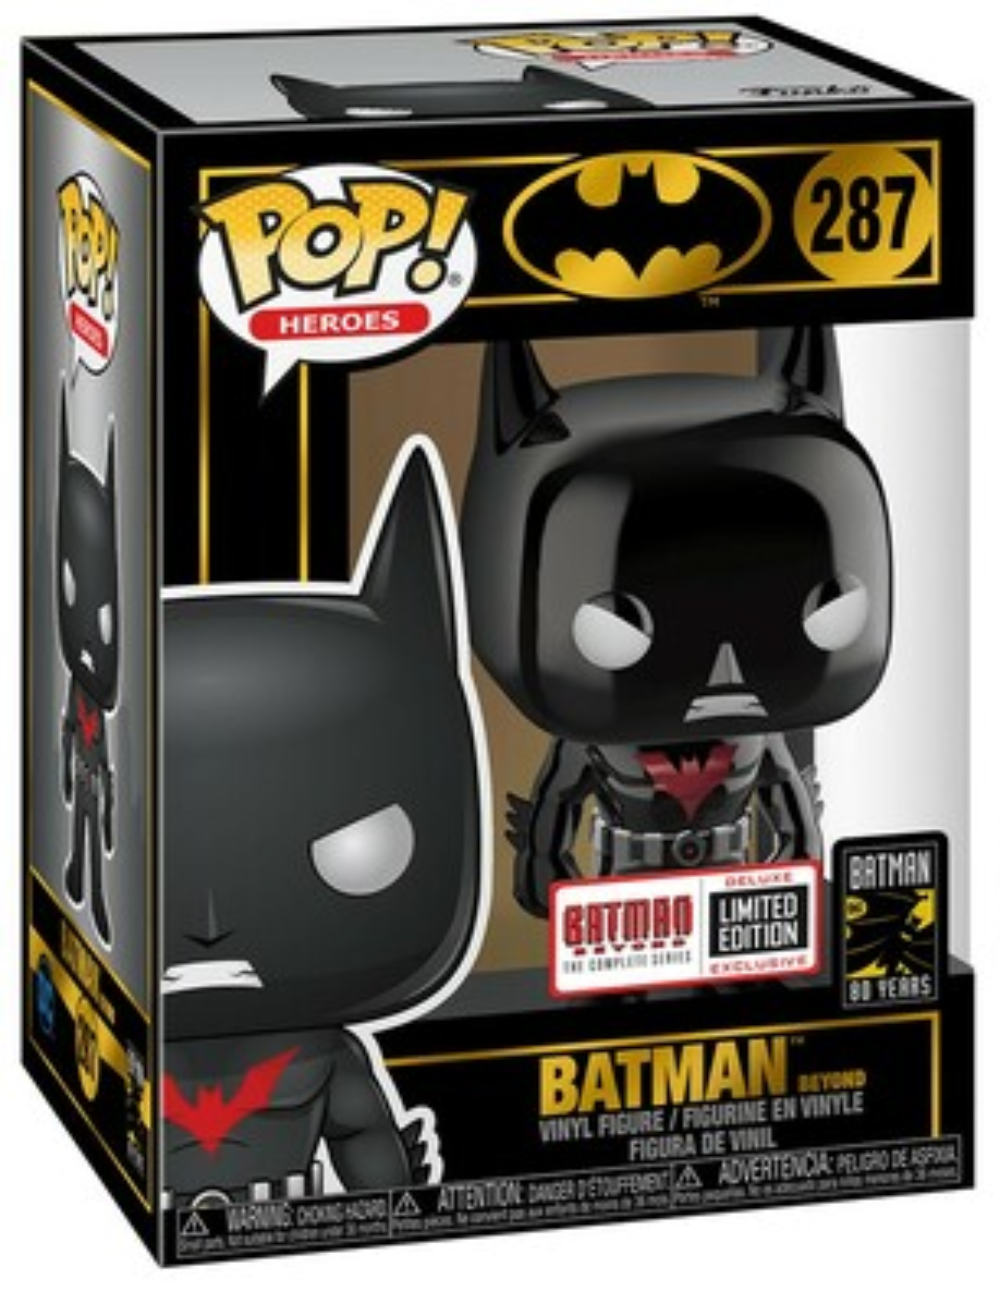 Buy Pop! Batman Beyond at Funko.